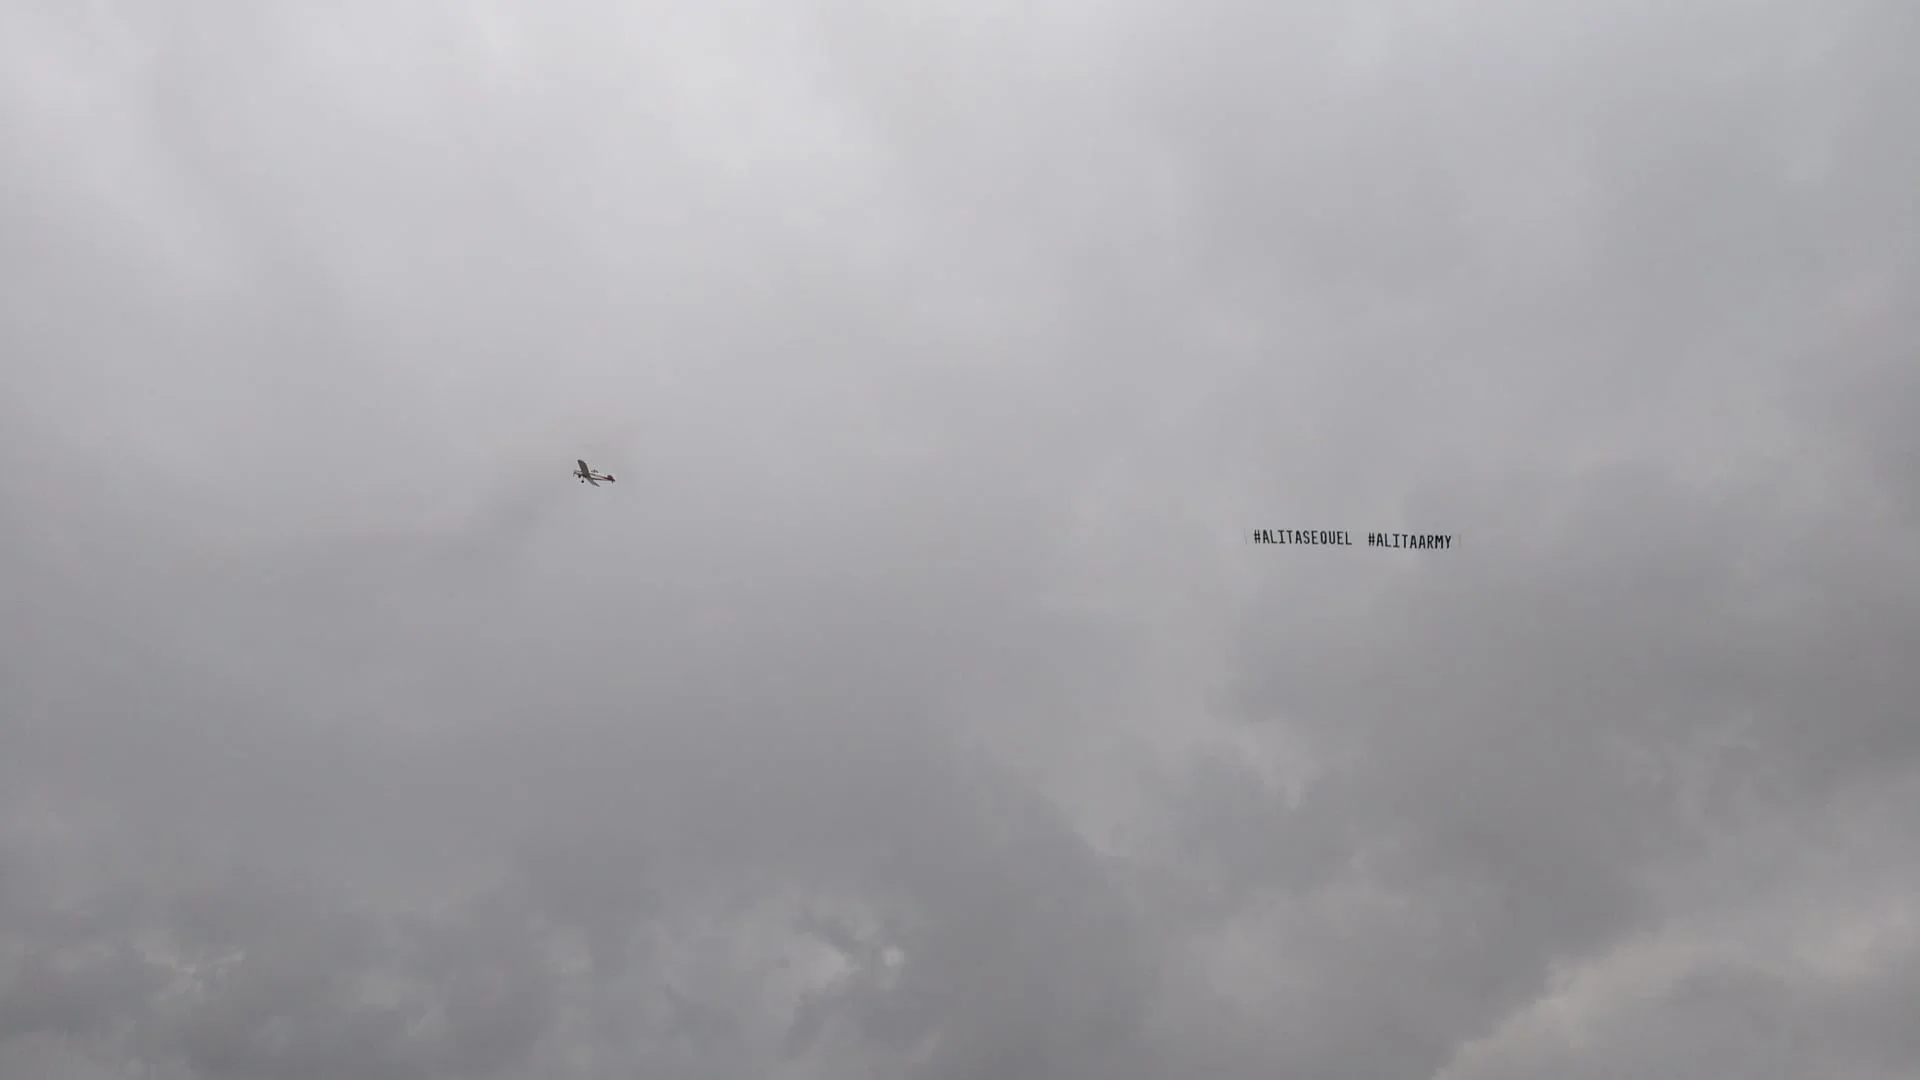 Фанаты «Алиты» заказали самолёт с баннером в поддержку сиквела на «Оскаре» - фото 1